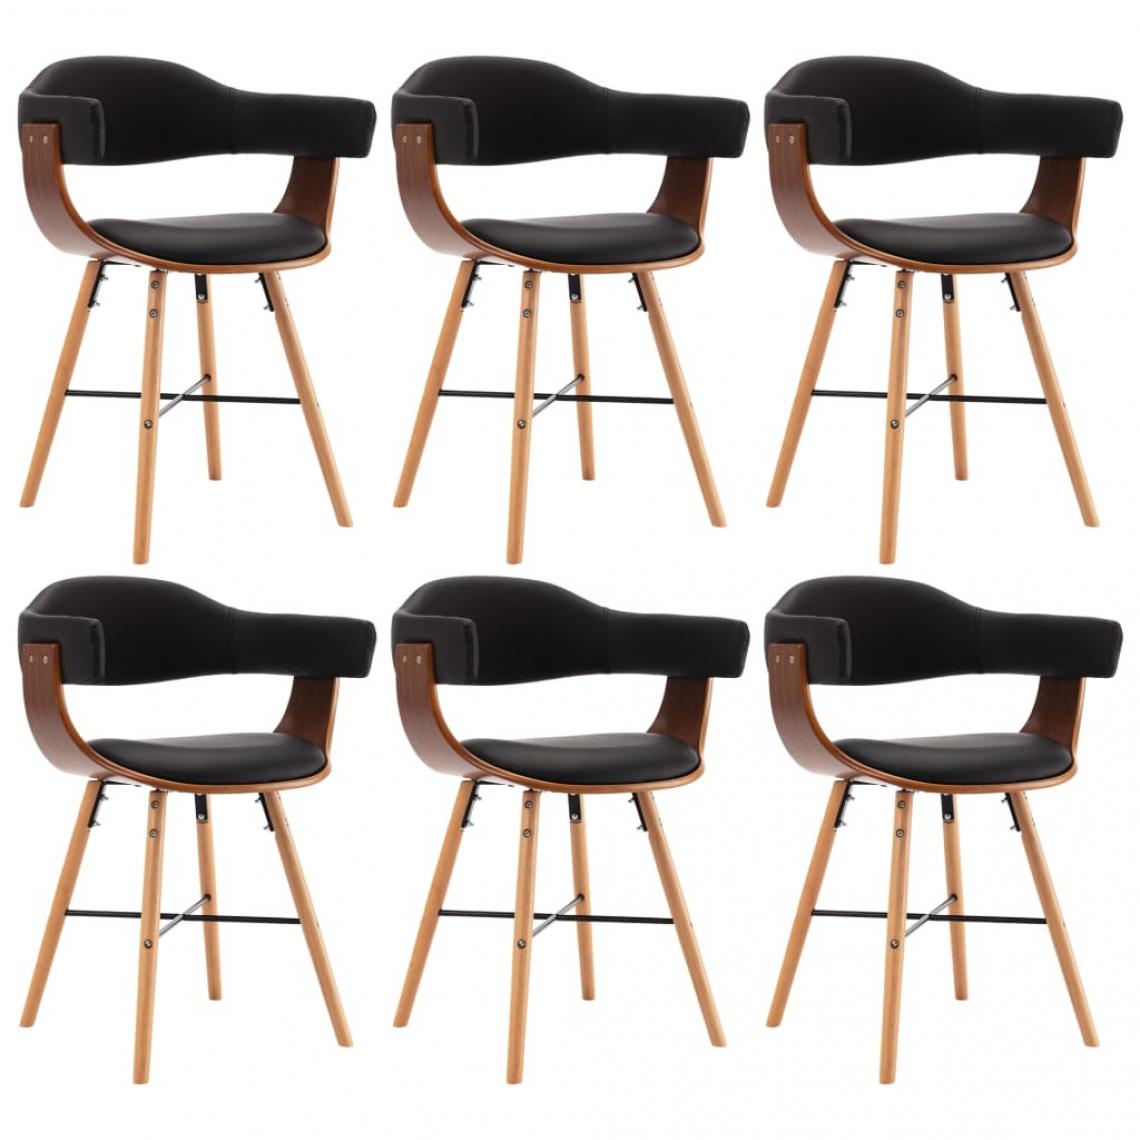 Decoshop26 - Lot de 6 chaises de salle à manger cuisine design moderne similicuir noir et bois courbé CDS022706 - Chaises